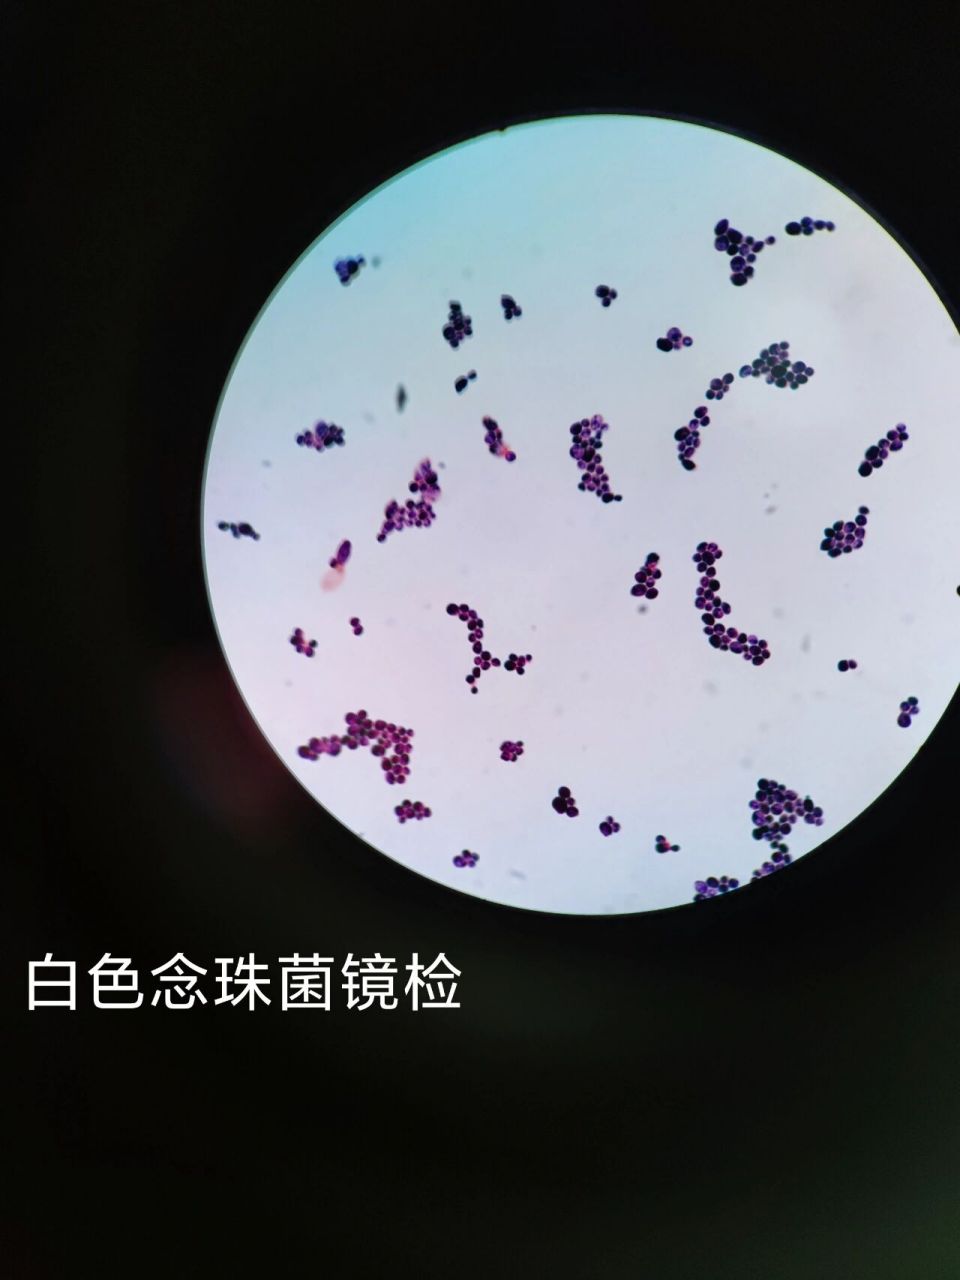 白色念珠菌,镜检图片,原来显微镜下白念菌这样子的,革兰氏阳性菌